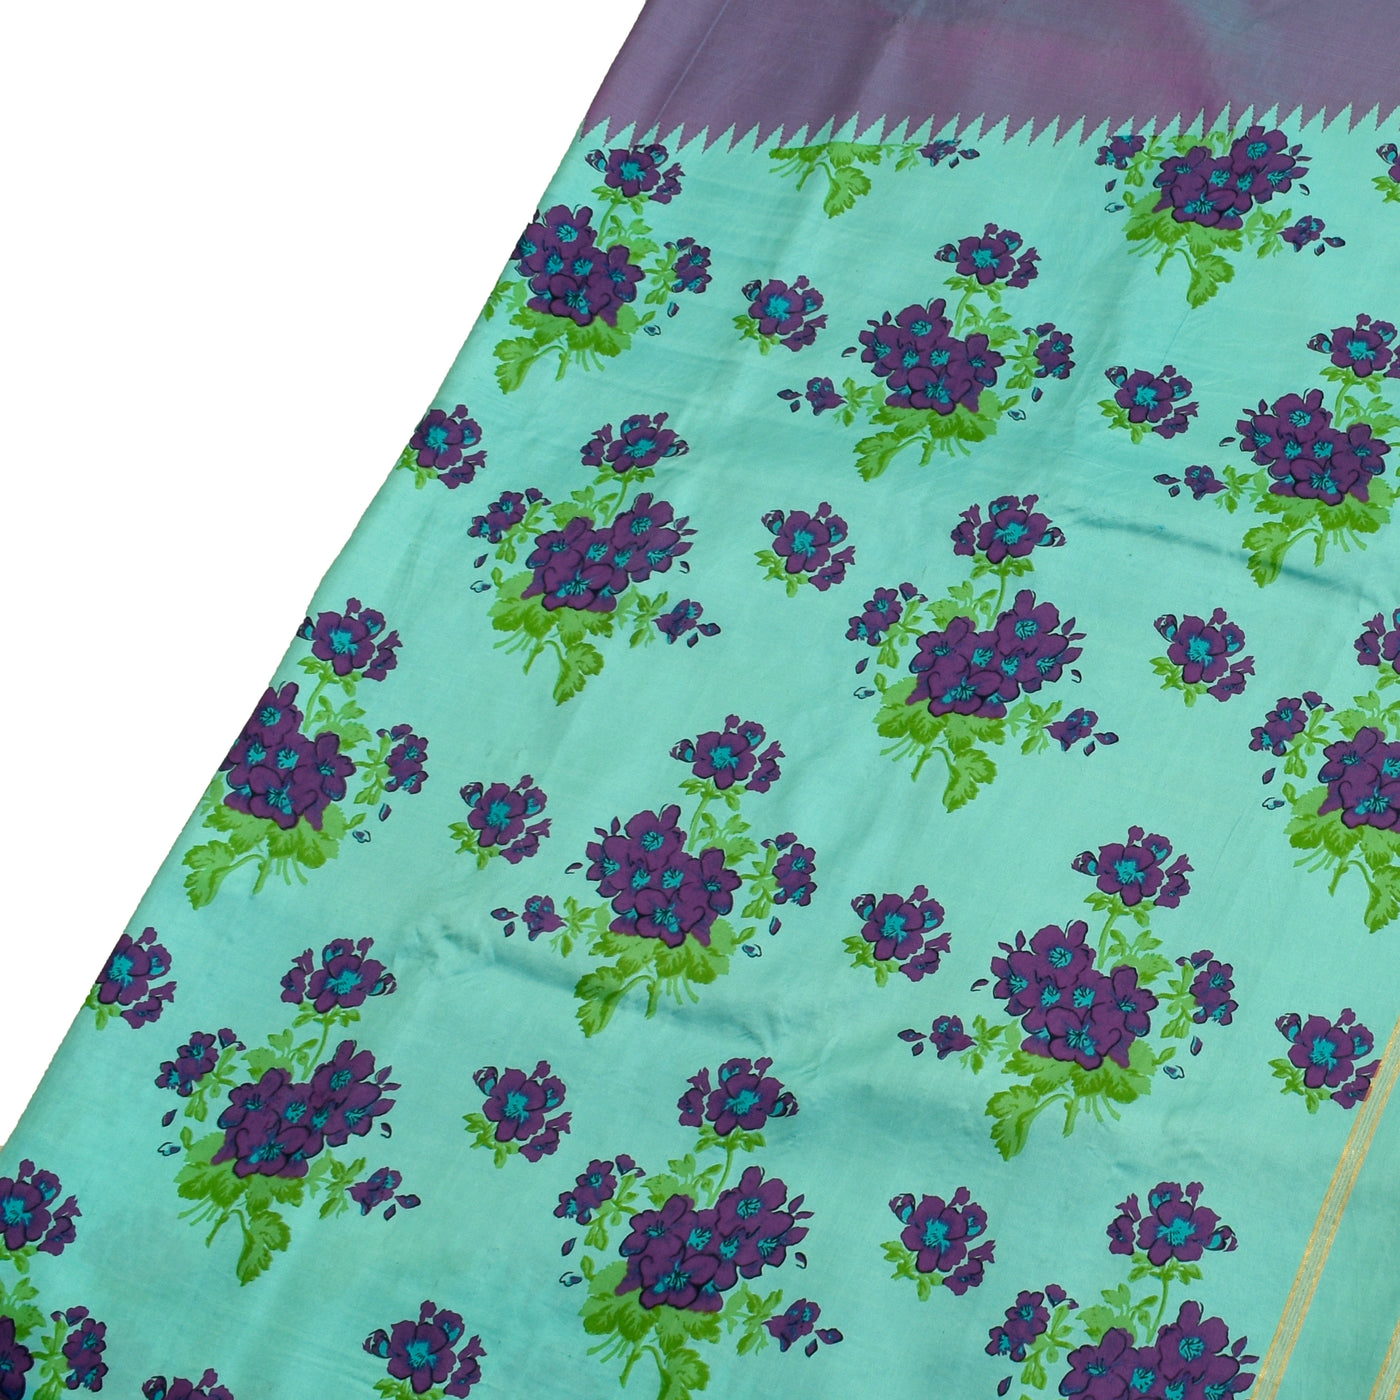 Rexona Blue Printed Kanchi Silk Saree with Floral Printed Design